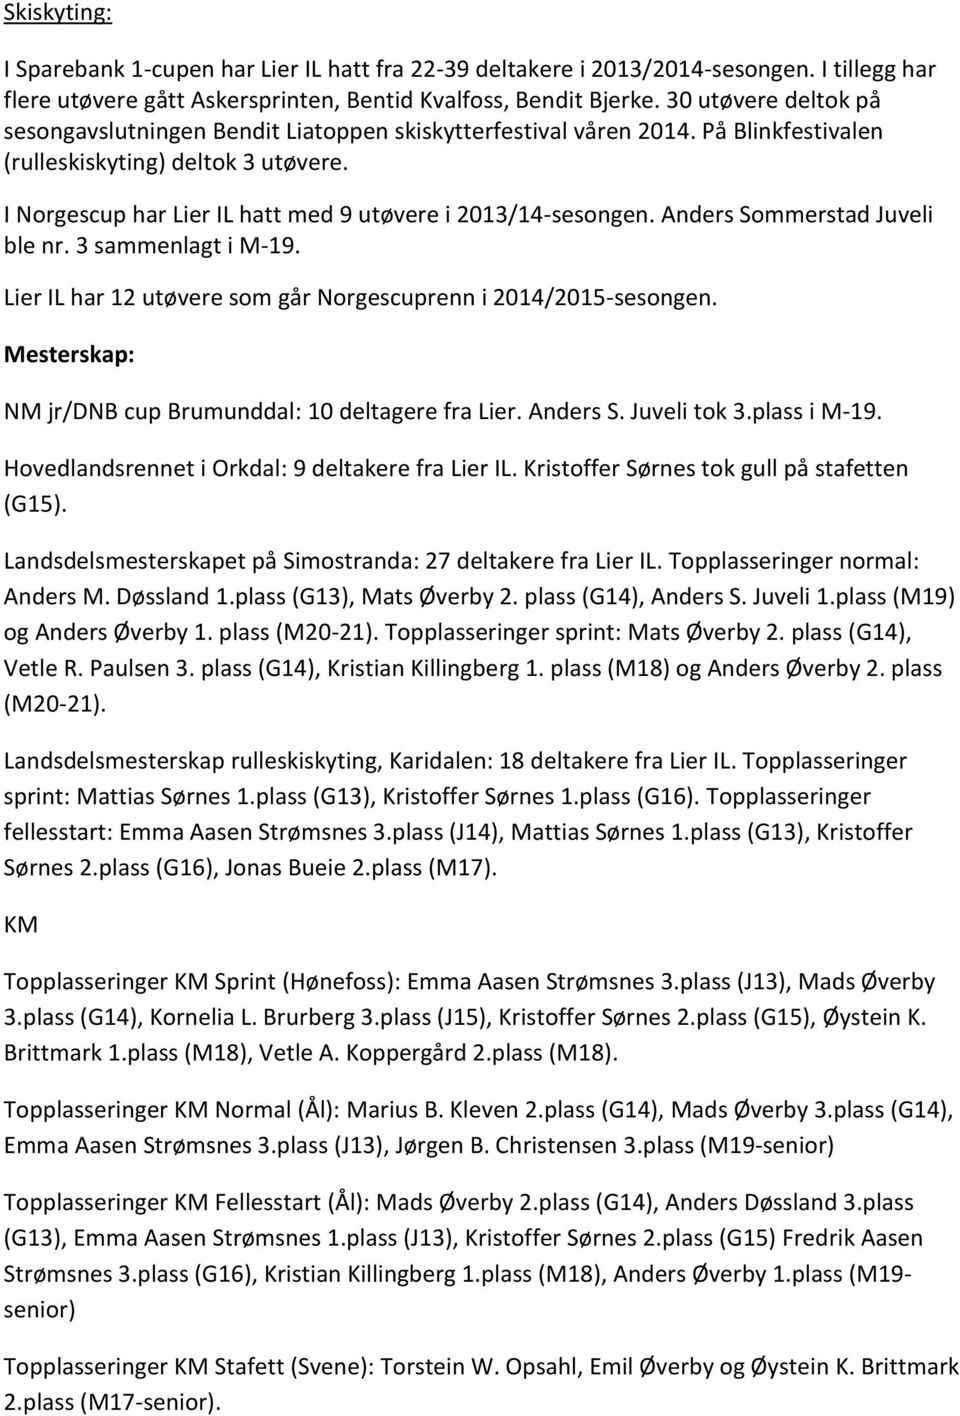 I Norgescup har Lier IL hatt med 9 utøvere i 2013/14-sesongen. Anders Sommerstad Juveli ble nr. 3 sammenlagt i M-19. Lier IL har 12 utøvere som går Norgescuprenn i 2014/2015-sesongen.